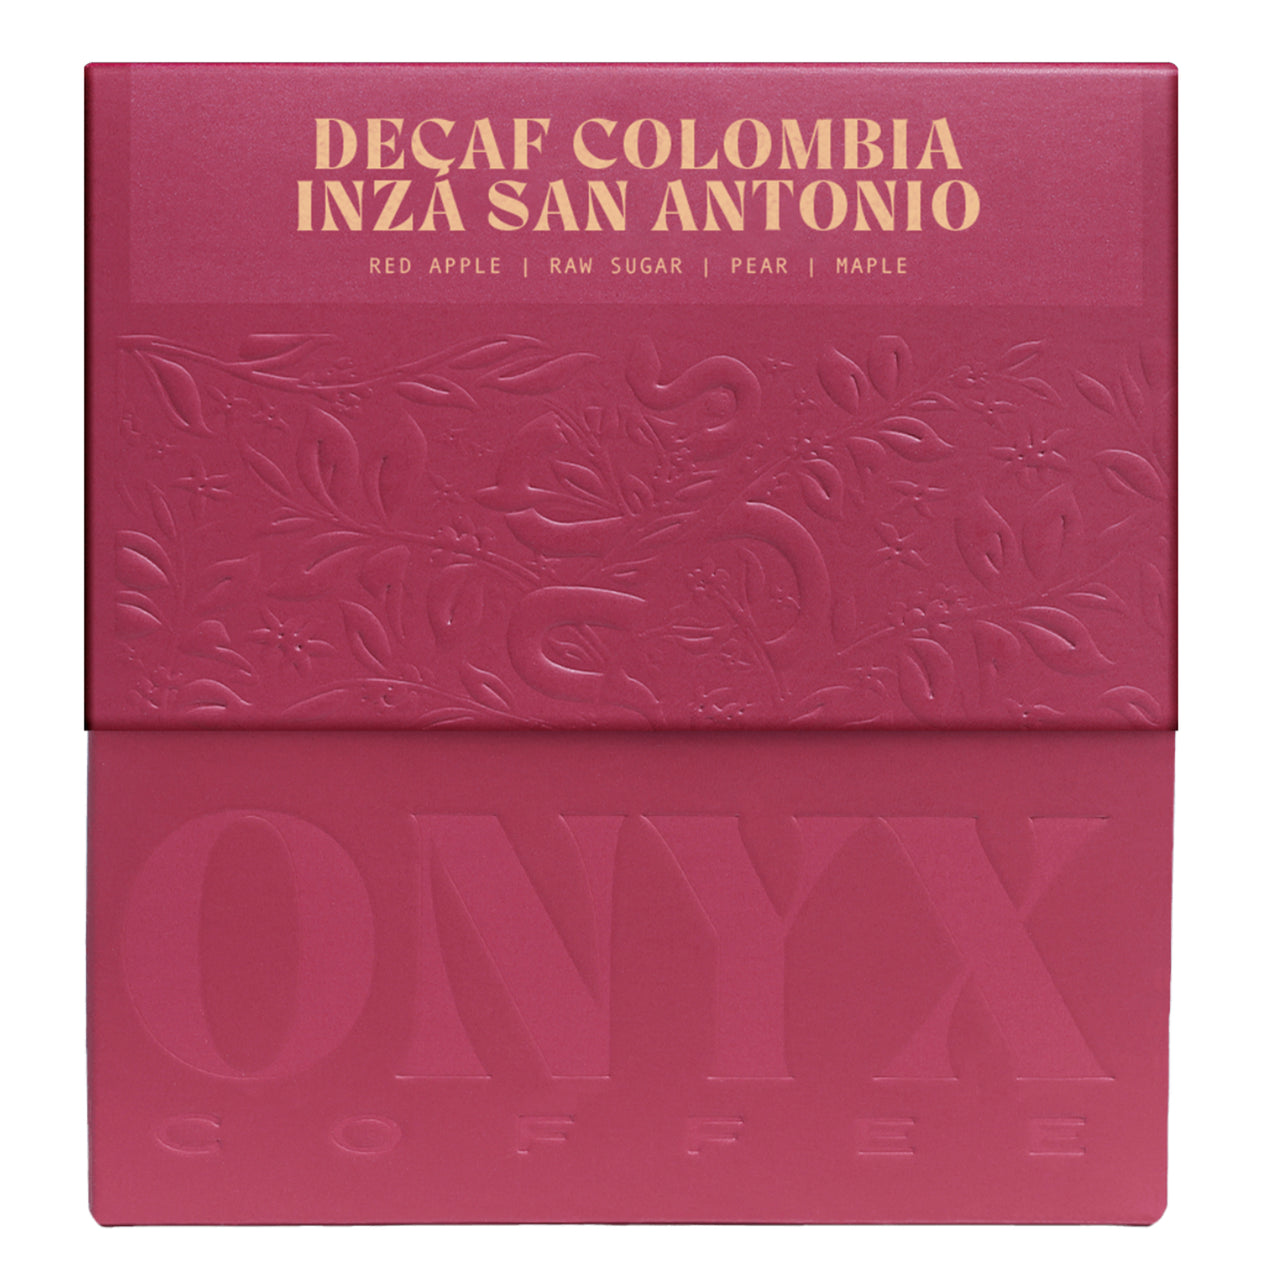 Decaf Colombia Inza San Antonio Coffee